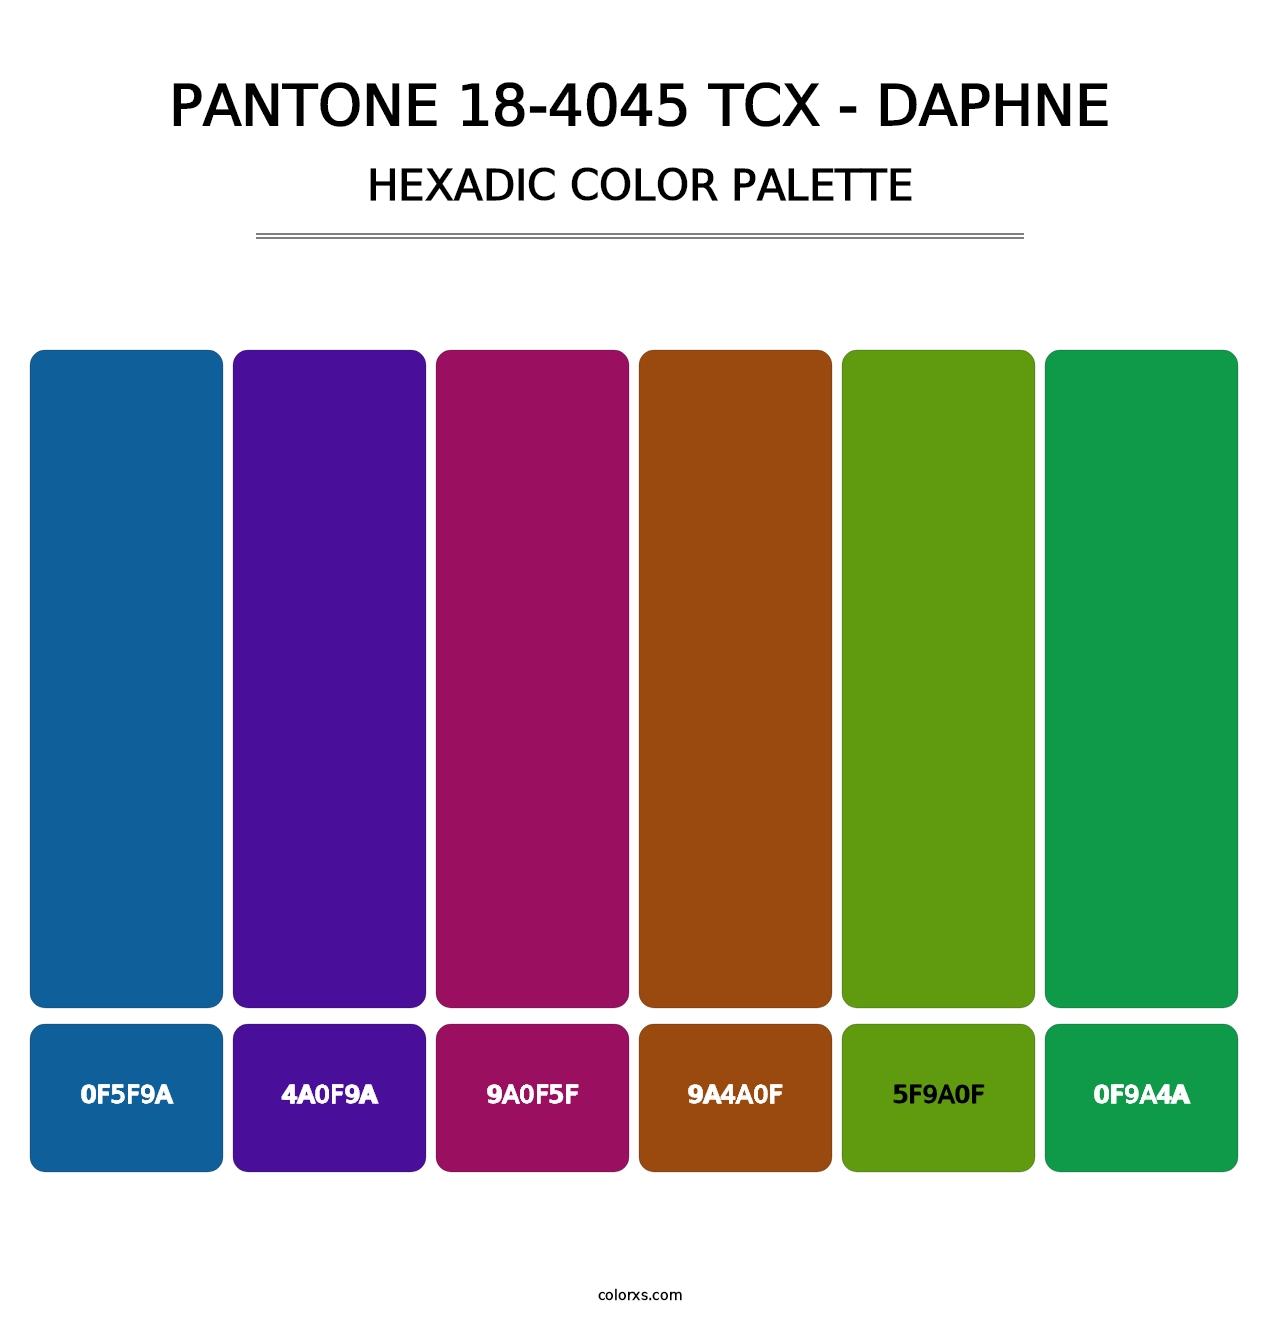 PANTONE 18-4045 TCX - Daphne - Hexadic Color Palette